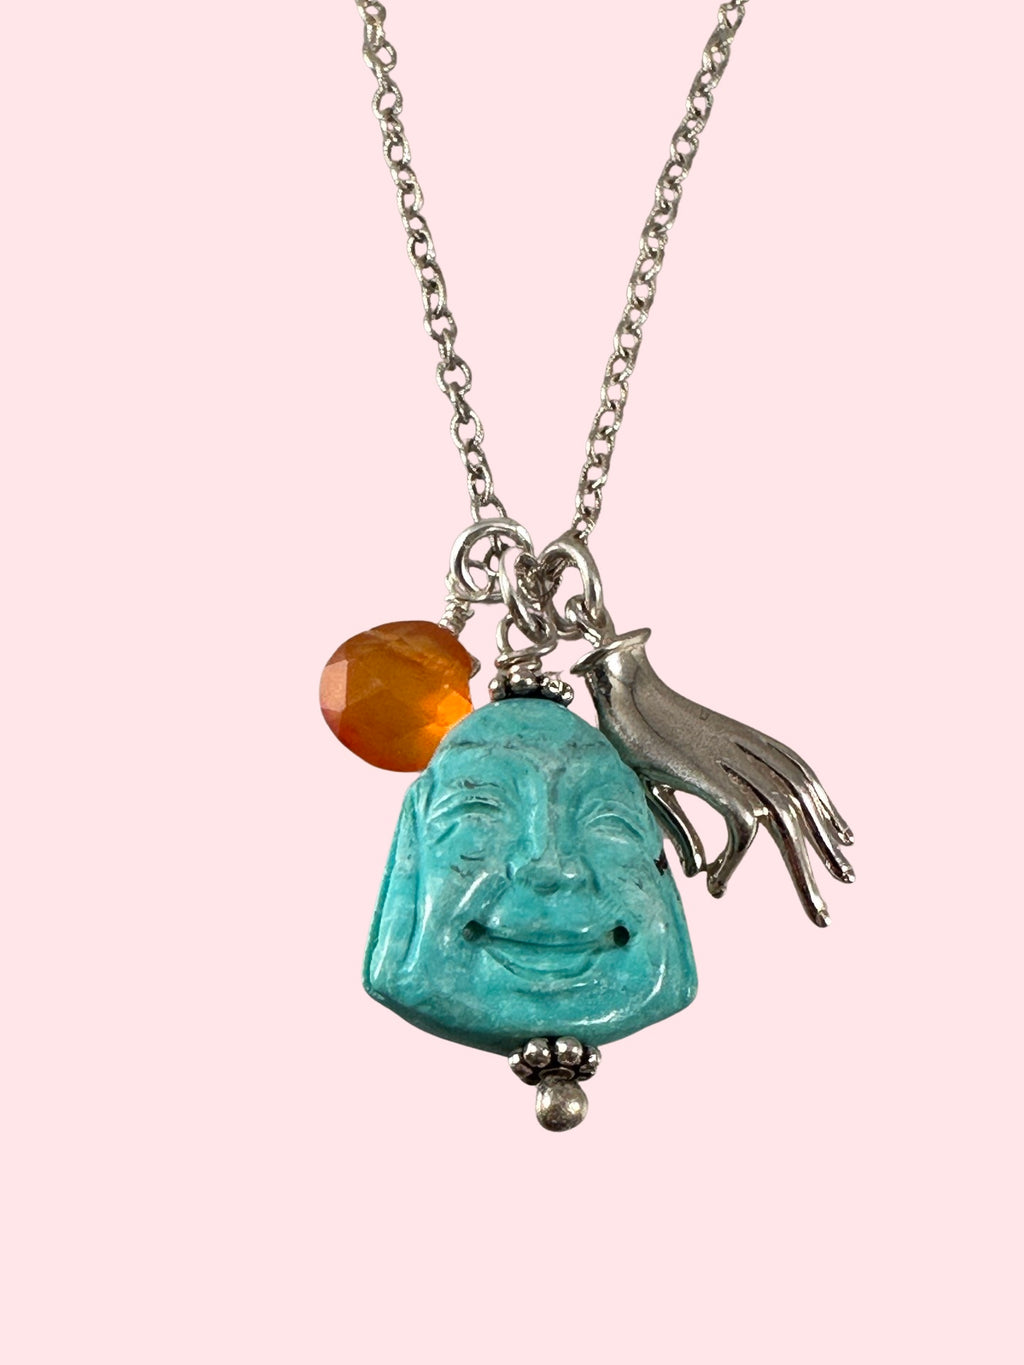 Turquoise Buddha Charm Necklace